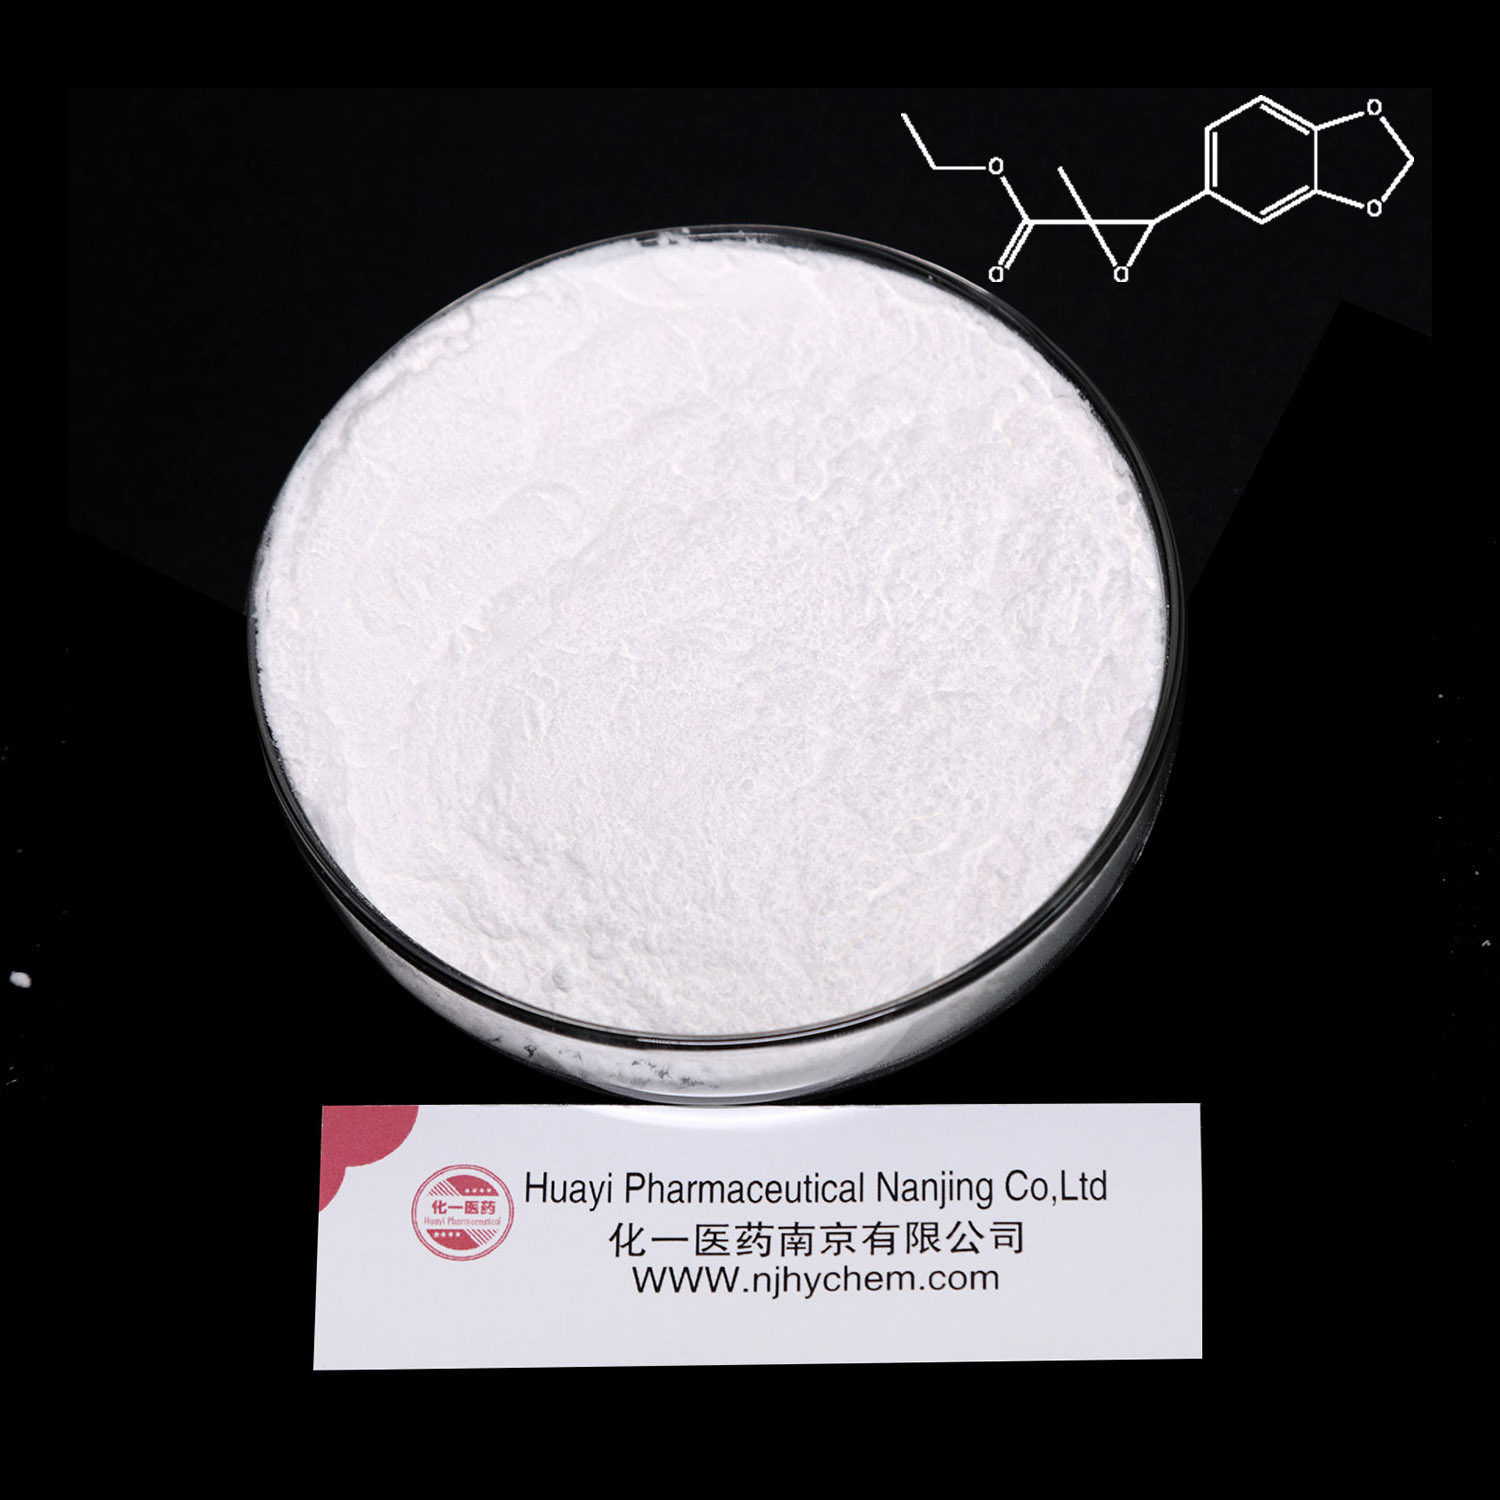 Pmk methyl glycidate powder and new ethyl pmk oil Cas 28578-16-7 